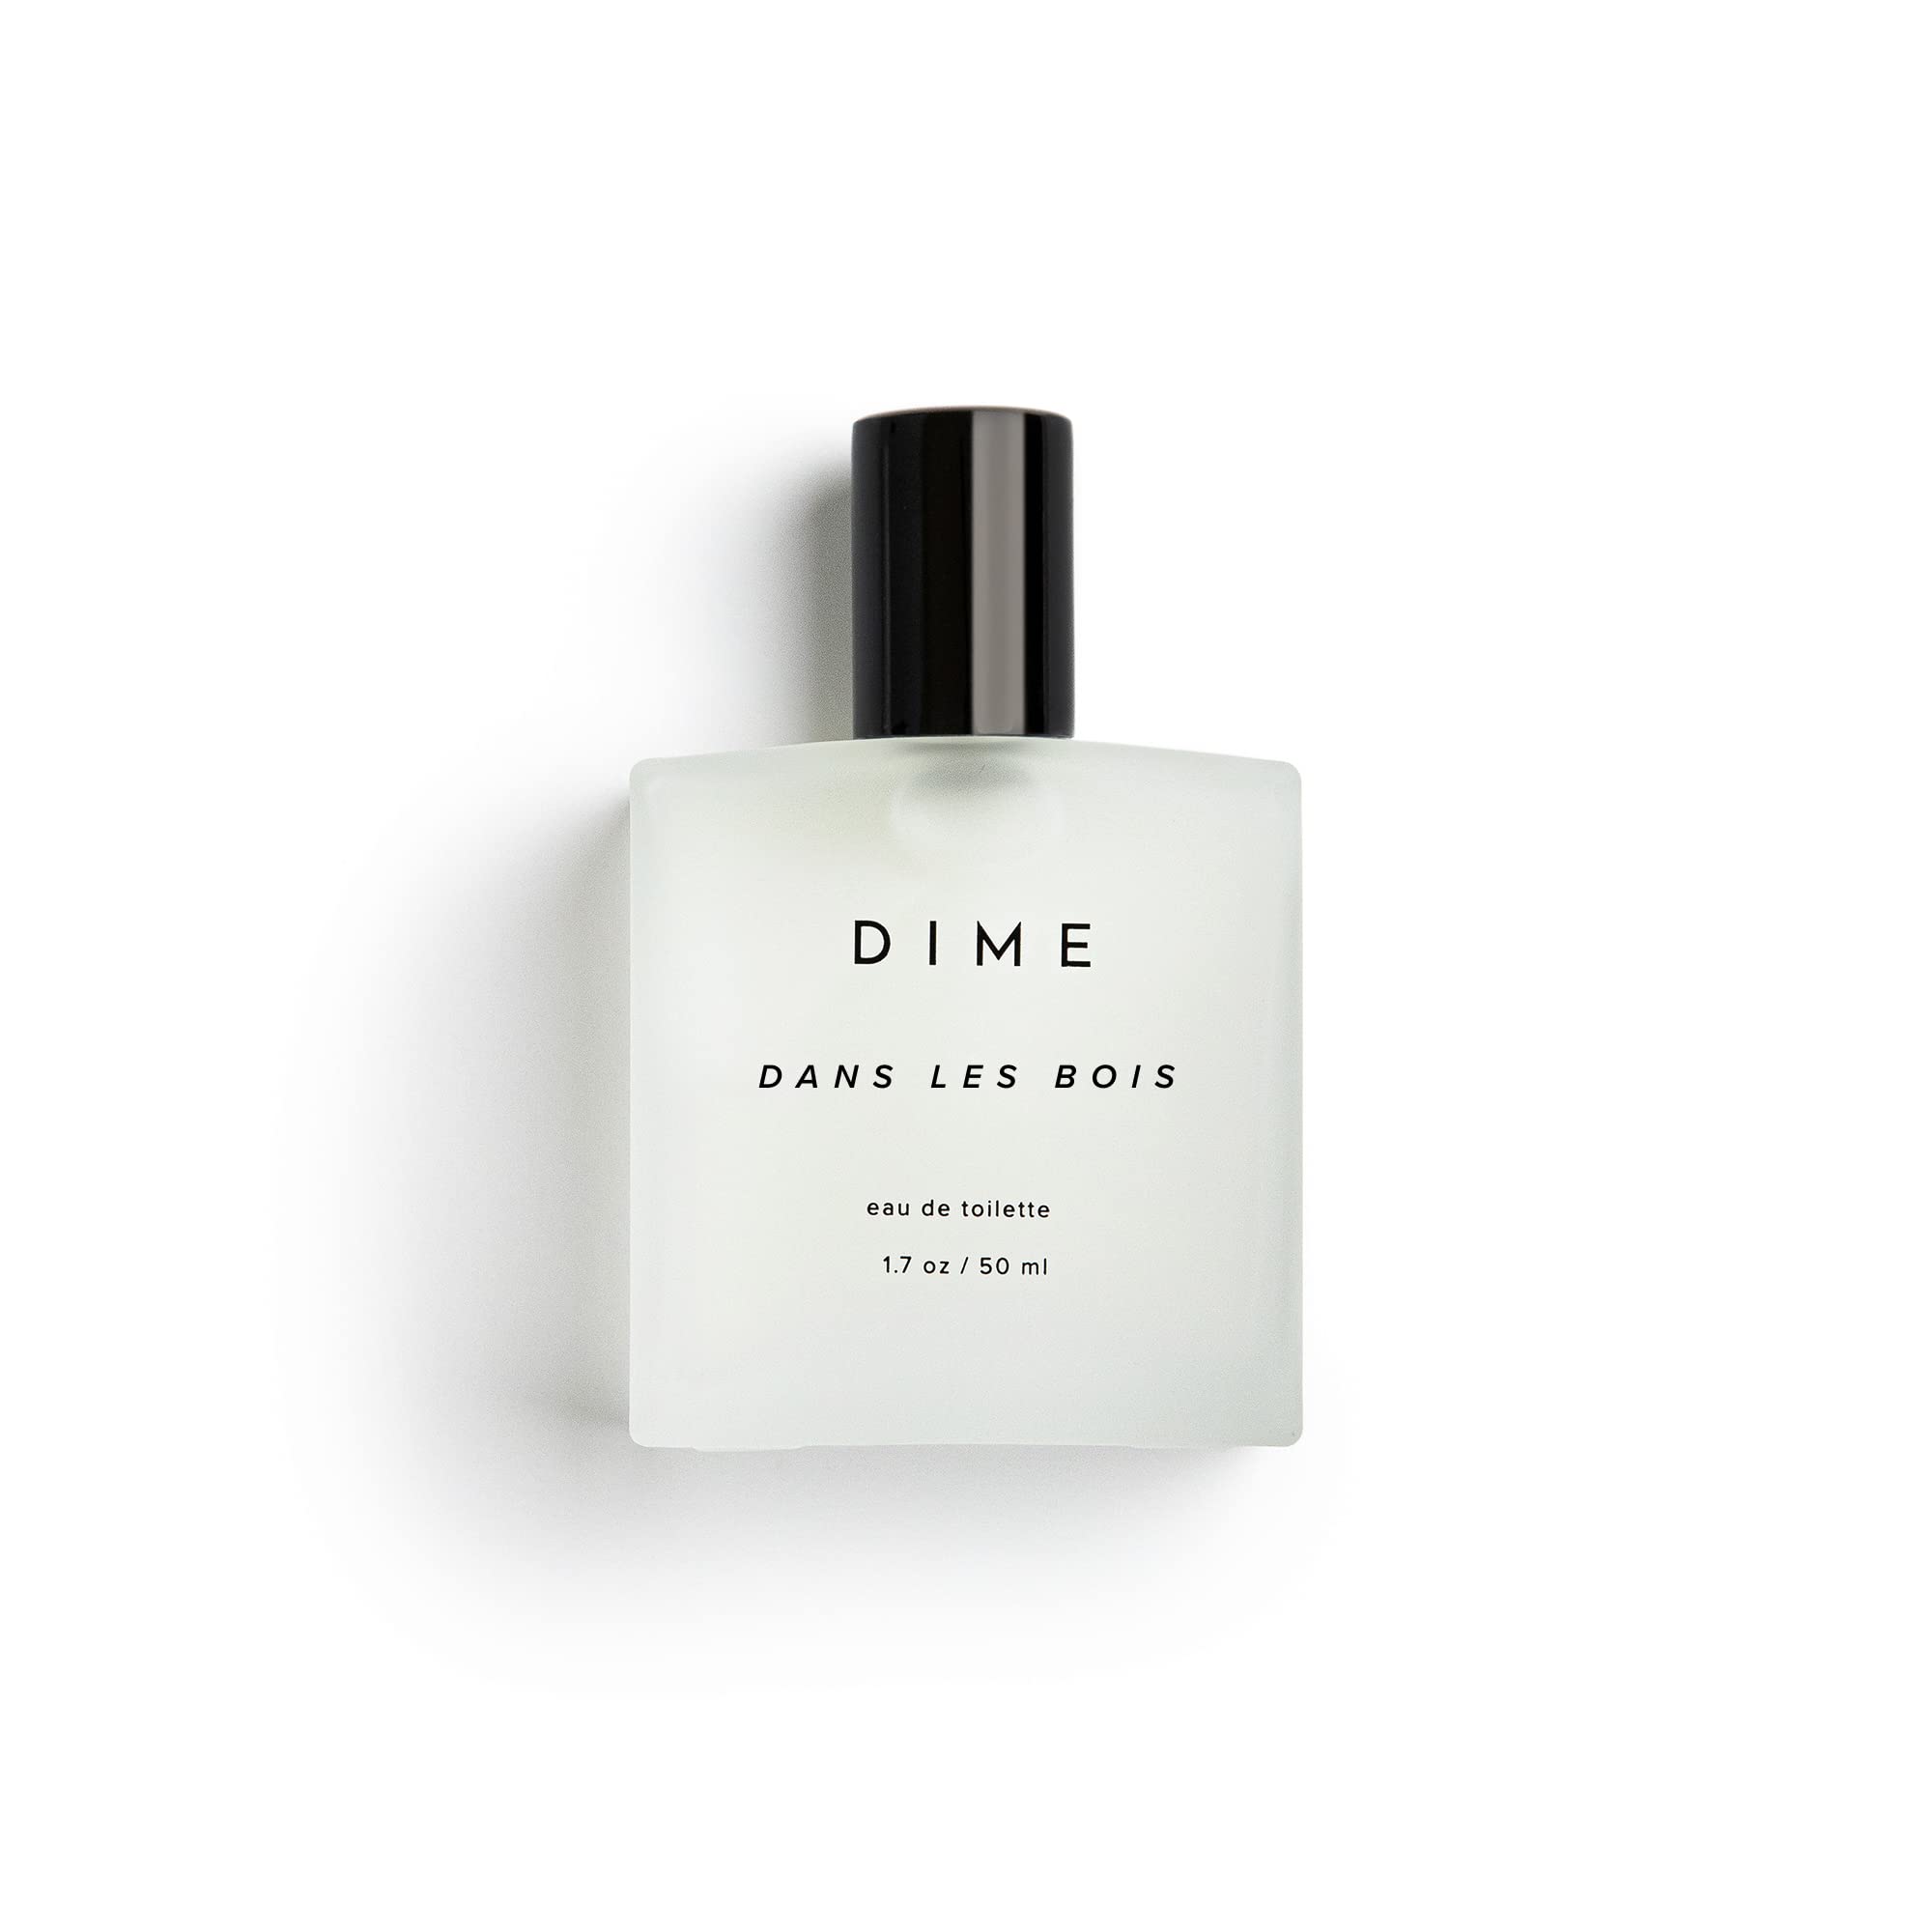 DIME Beauty Perfume Dans Les Bois, Feminine and Bold Scent, Hypoallergenic, Clean Perfume, Eau de Toilette For Women, 1.7 oz / 50 ml